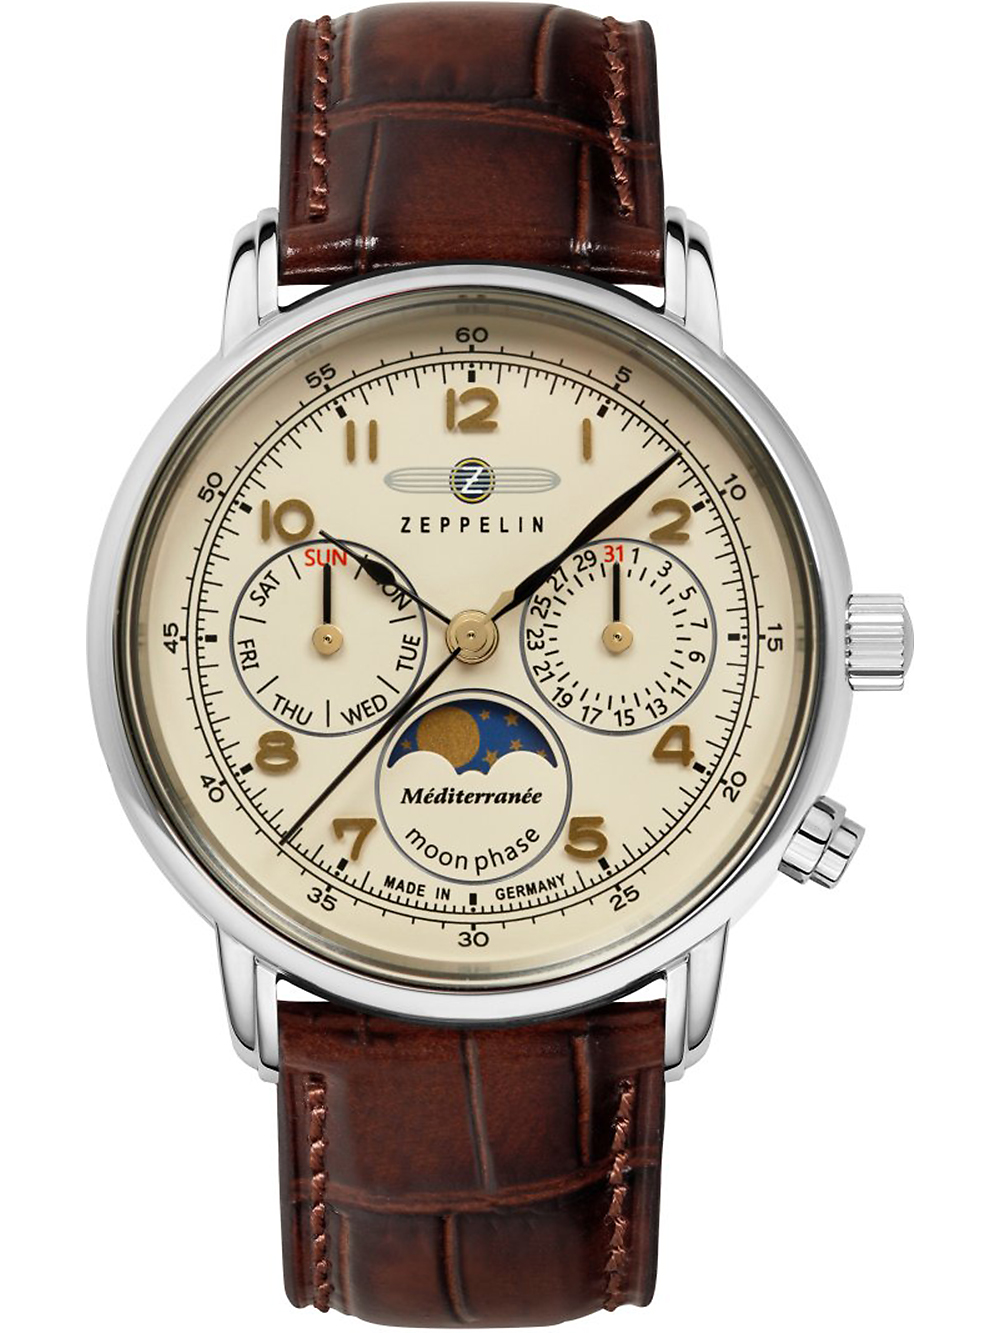 Dámské hodinky Zeppelin 9637-5 Méditerranée